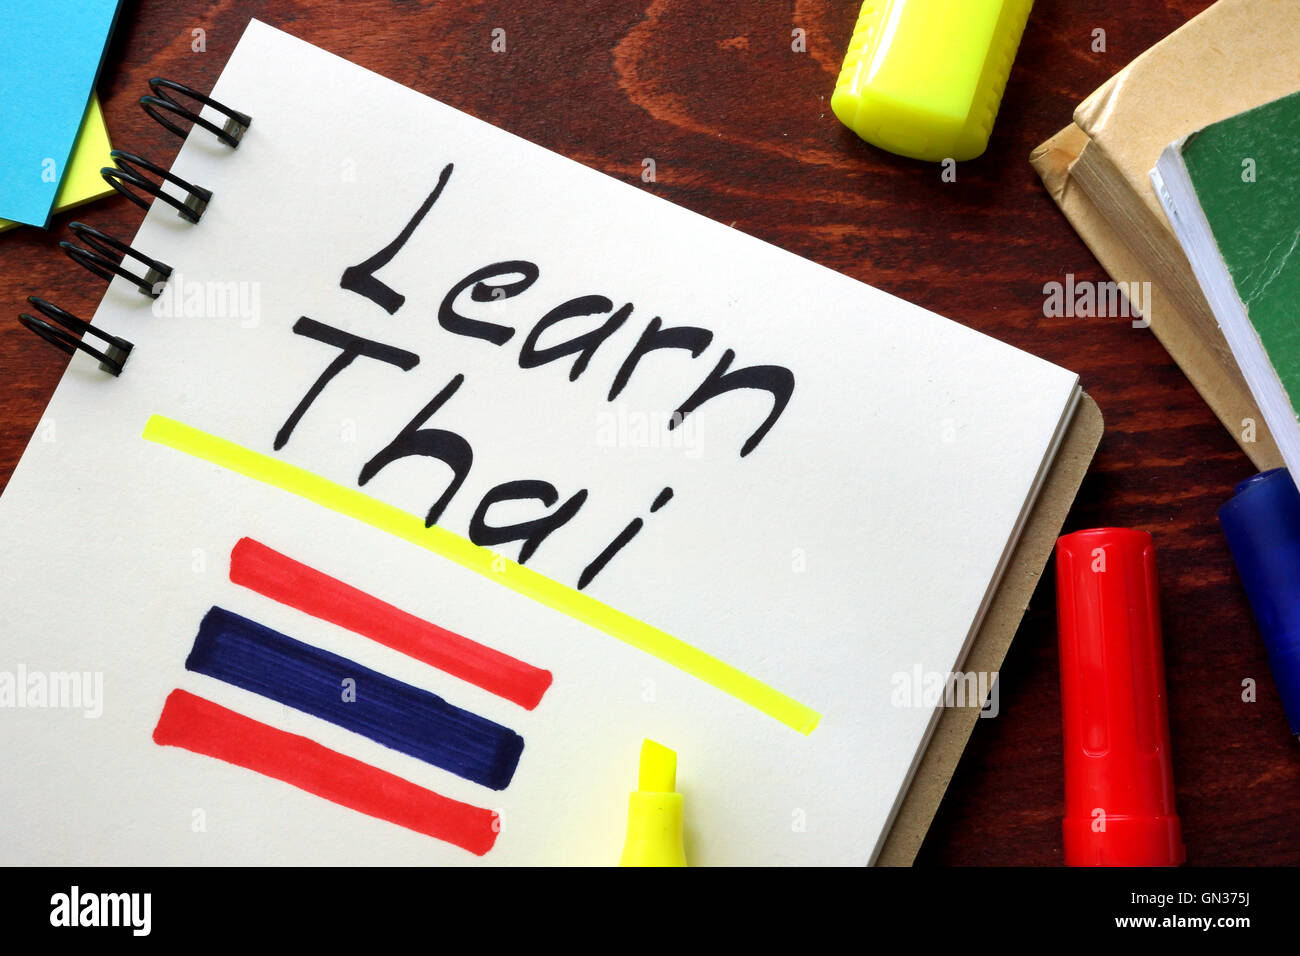 Lernen Sie Thai in einem Editor geschrieben.  Bildungskonzept. Stockfoto